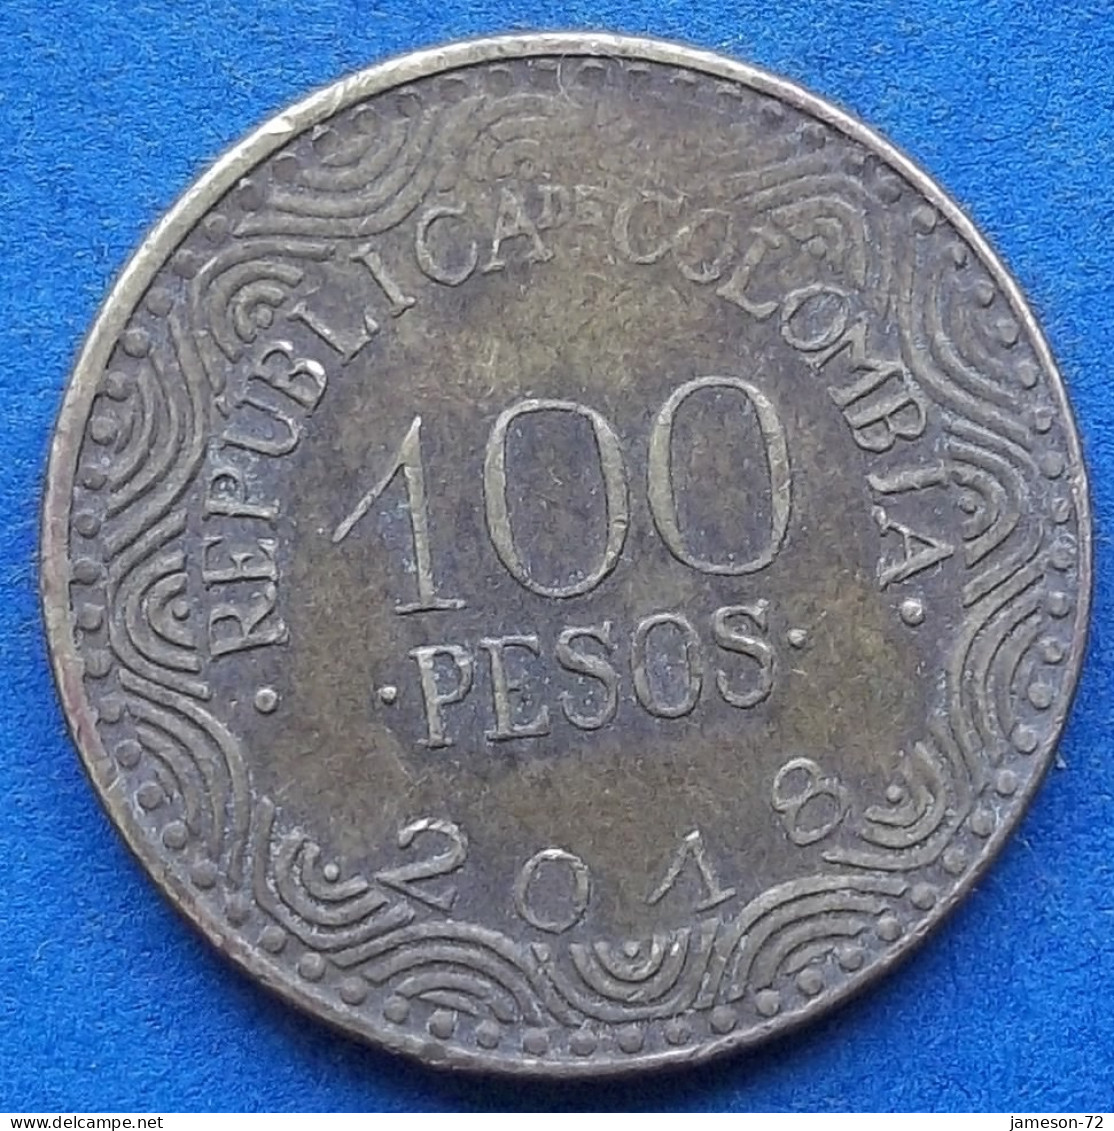 COLOMBIA - 100 Pesos 2018 "Frailejon" KM# 296 Republic - Edelweiss Coins - Kolumbien